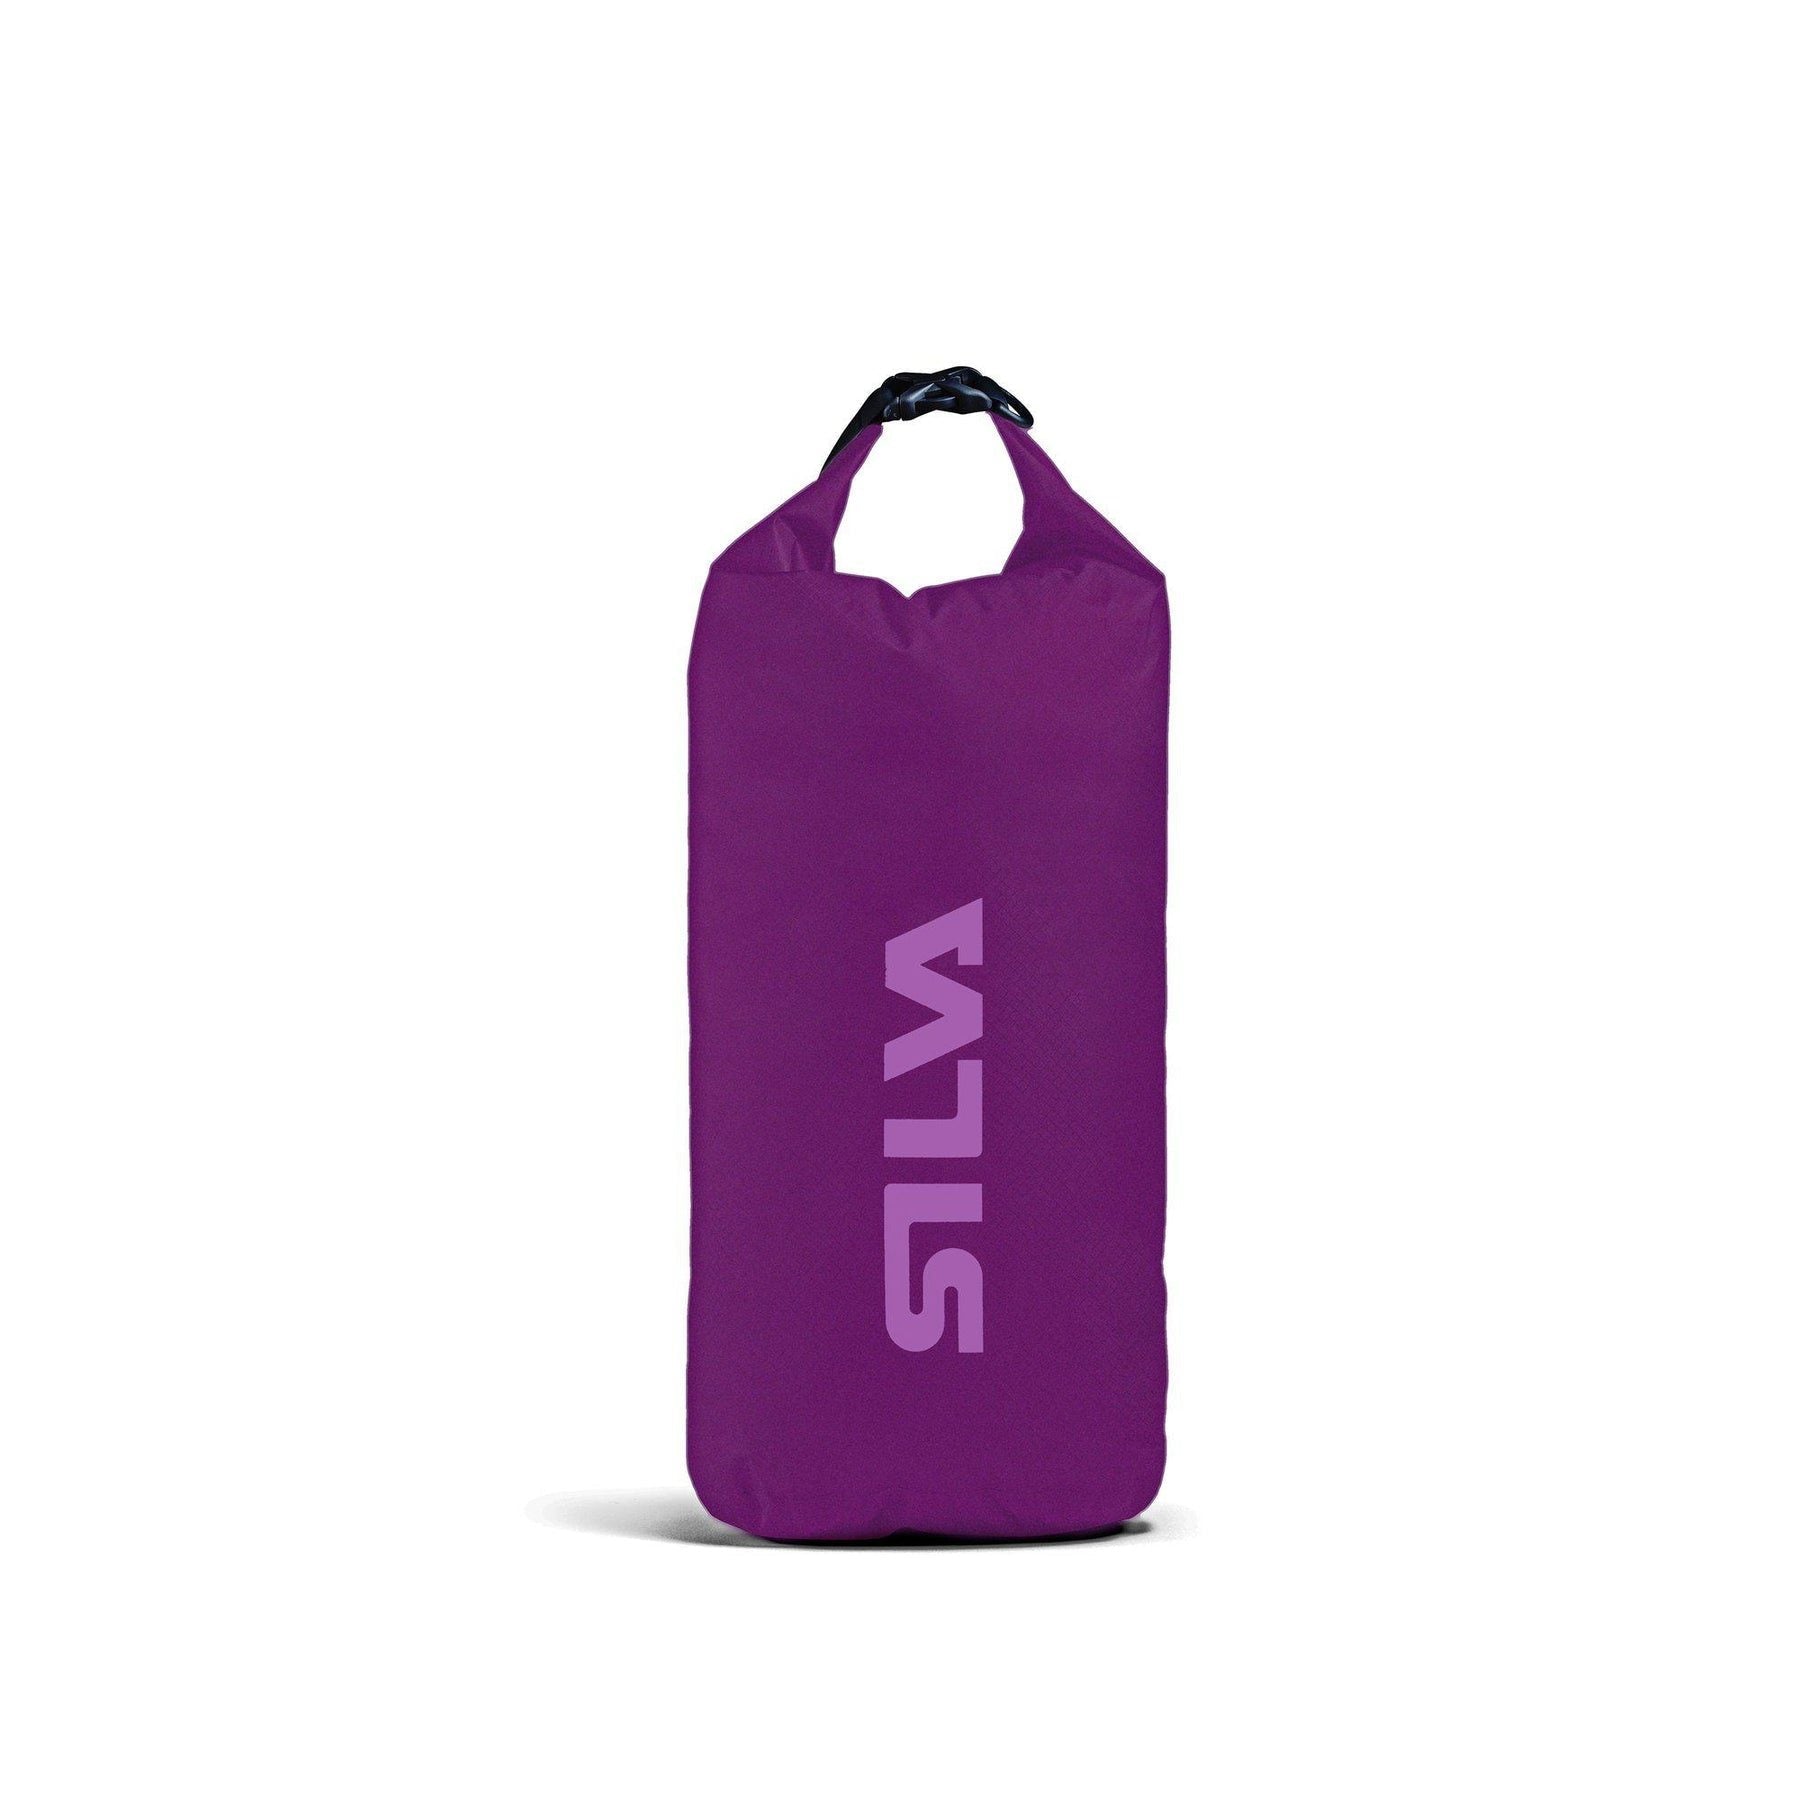 Silva 70D Waterproof Dry Bag, 6 L